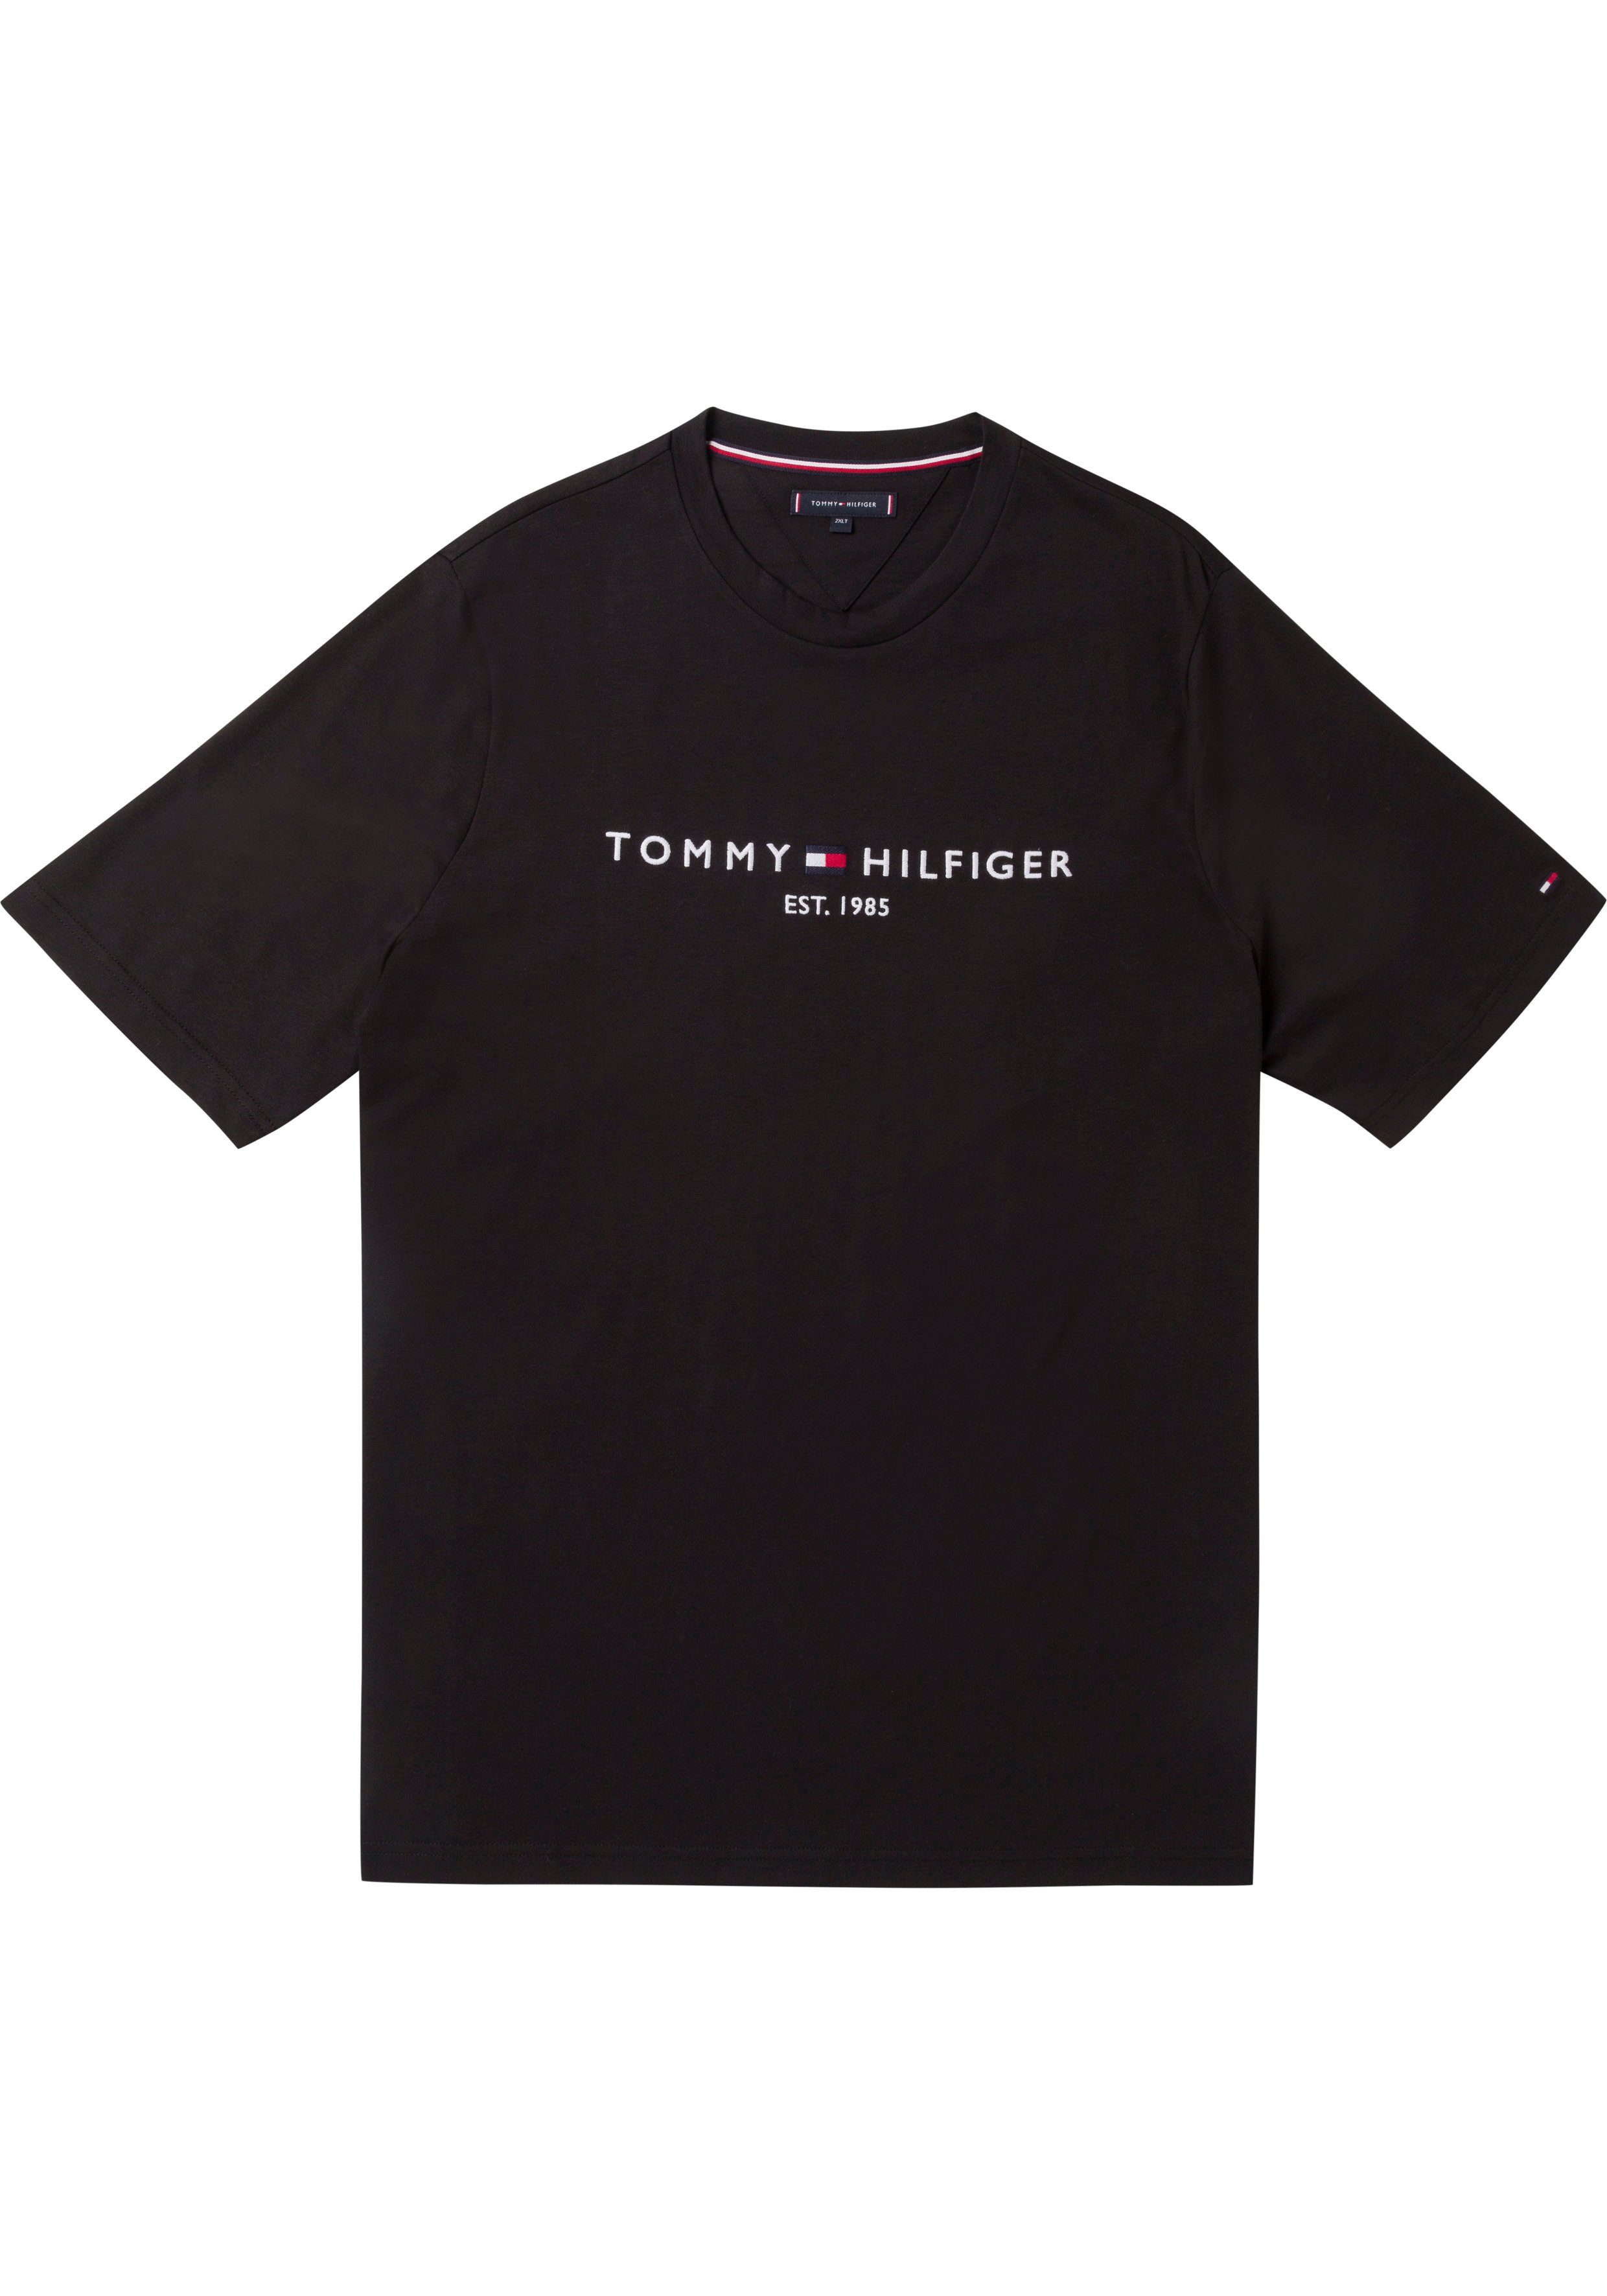 Versandhandel Logoschriftzug mit T-Shirt Hilfiger TEE-B Brust LOGO Tommy Big Tall Tommy BT-TOMMY schwarz Hilfiger der auf &